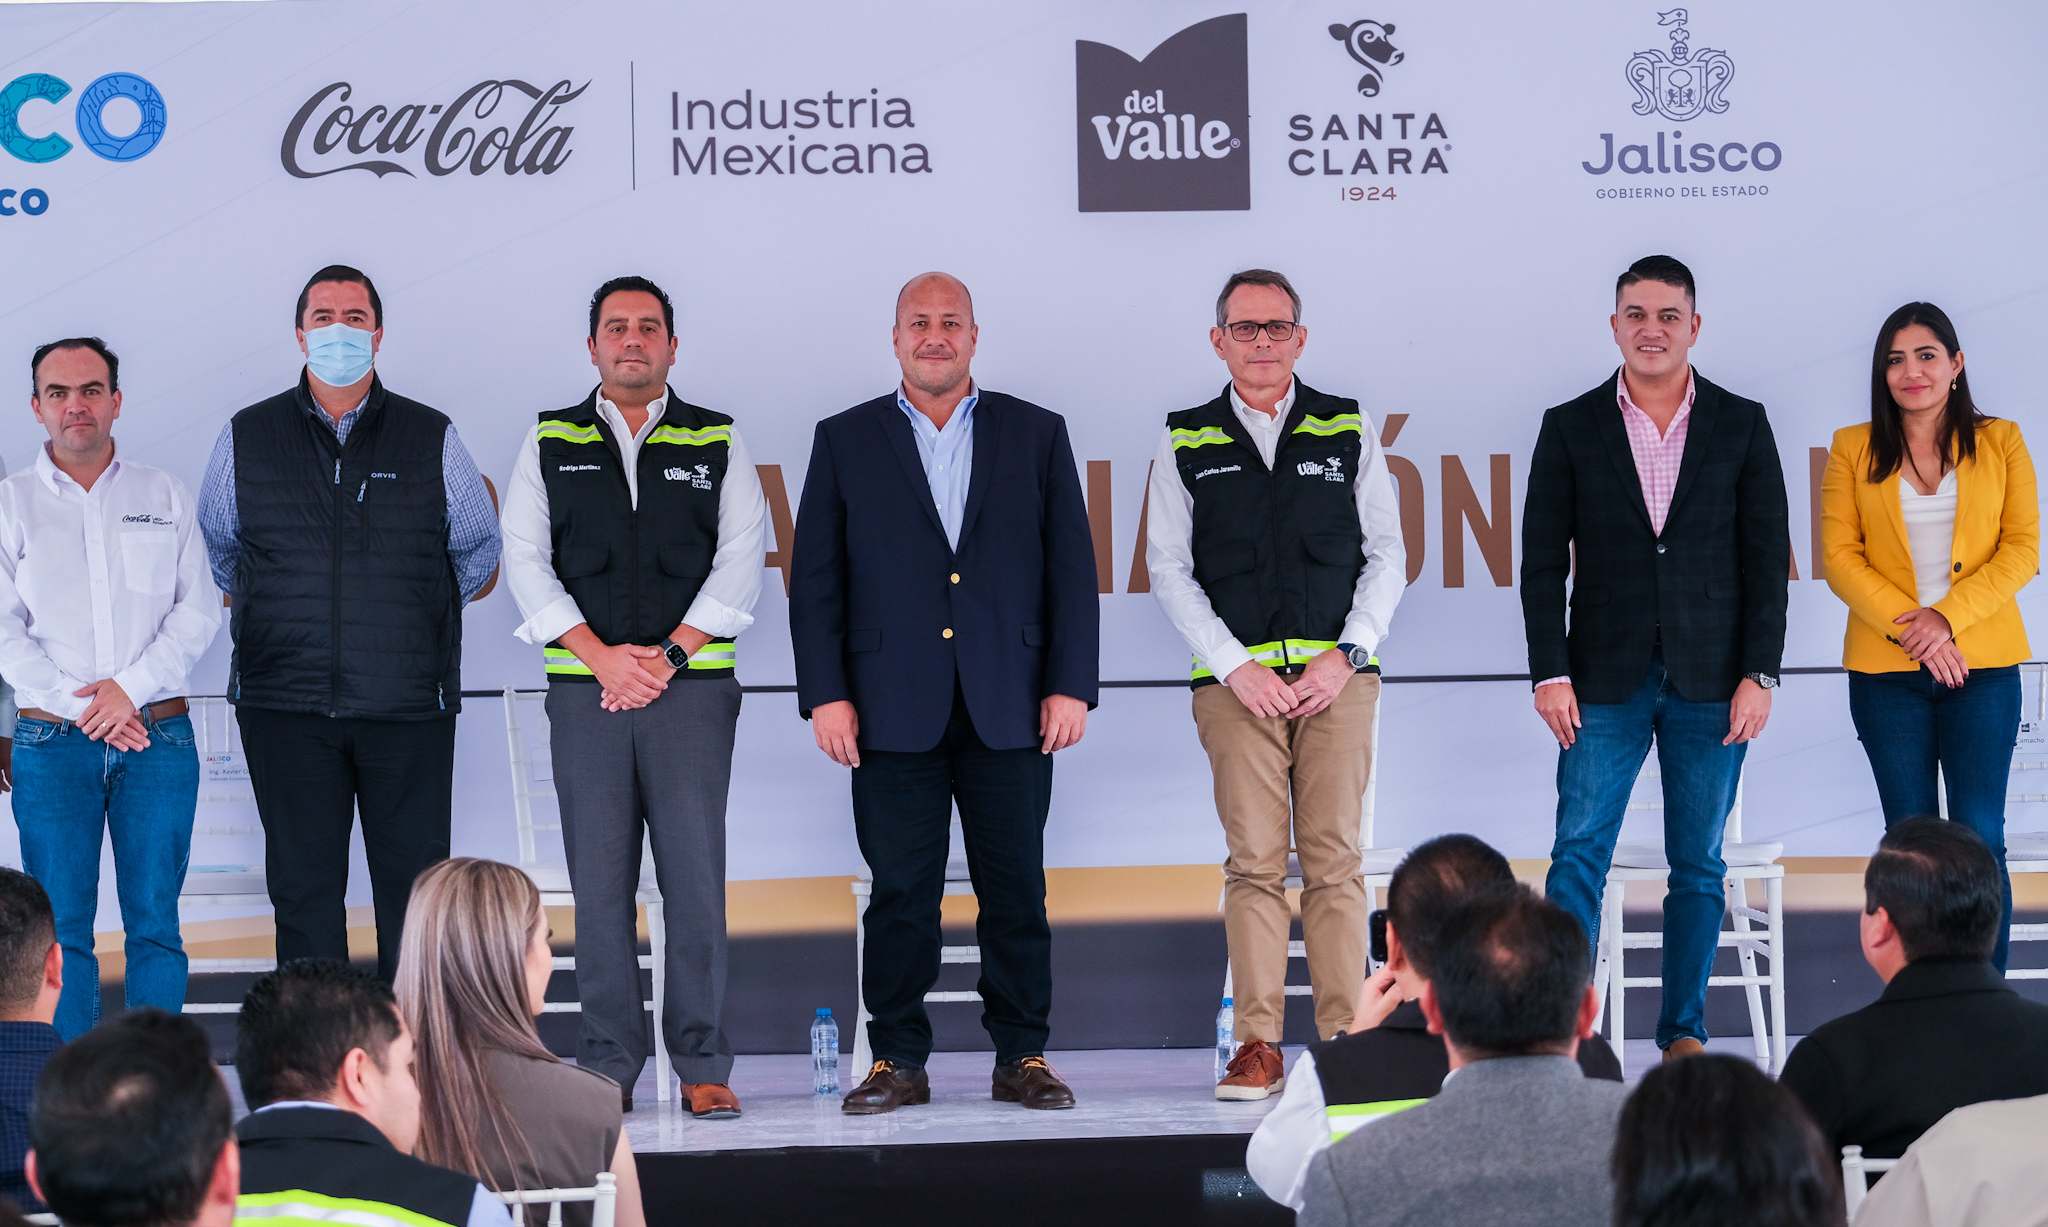 Coca-Cola de México invertirá 133 mdd en una planta de Jugos del Valle-Santa Clara en Jalisco